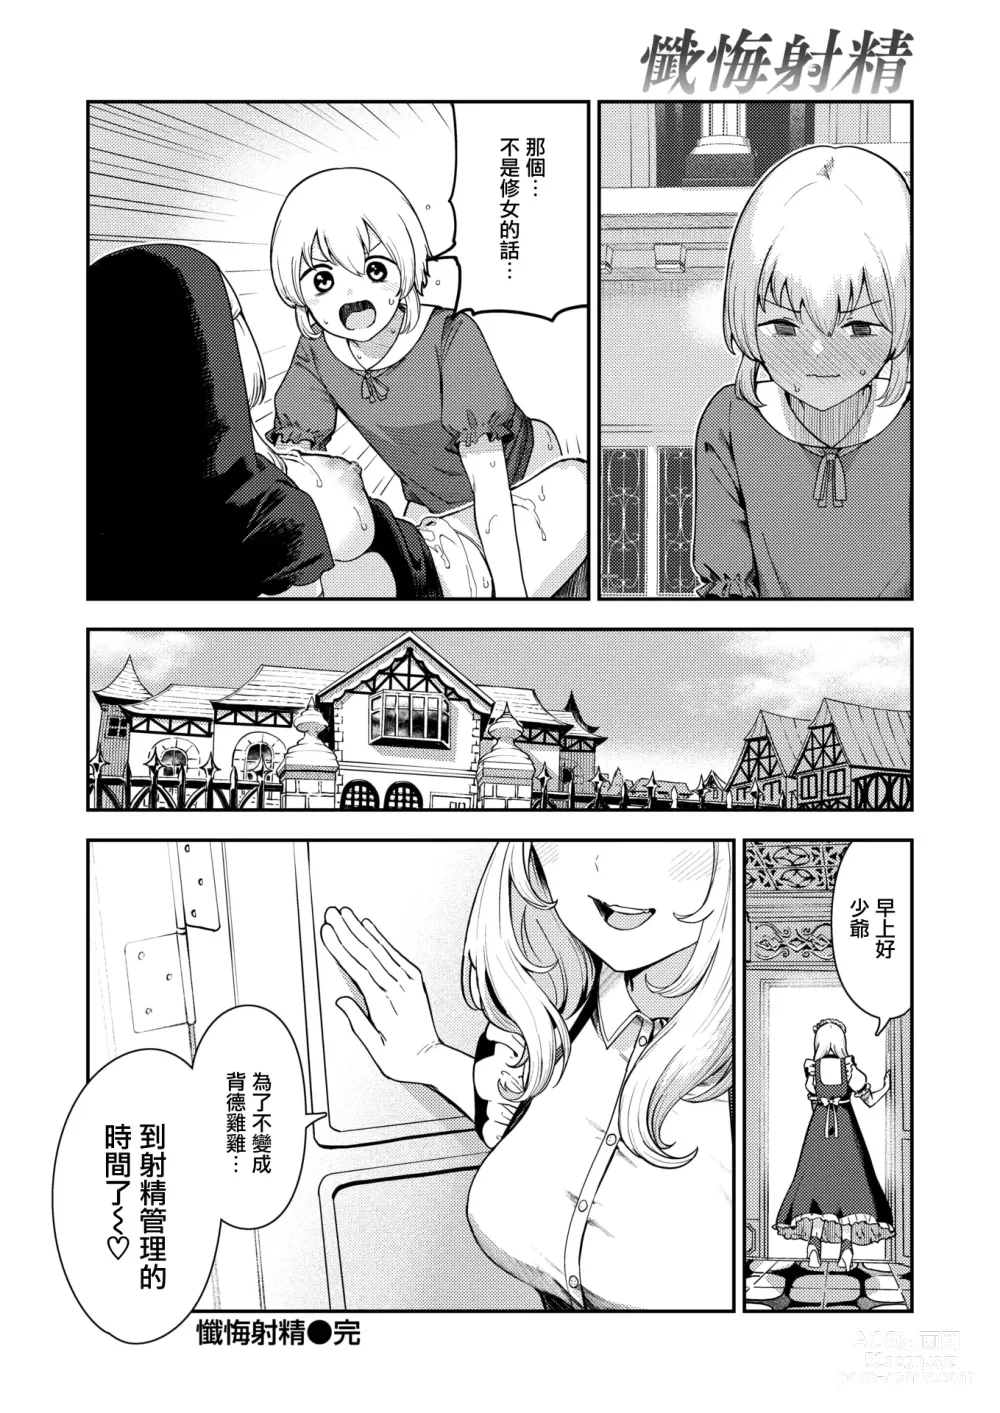 Page 32 of manga Zange Shasei